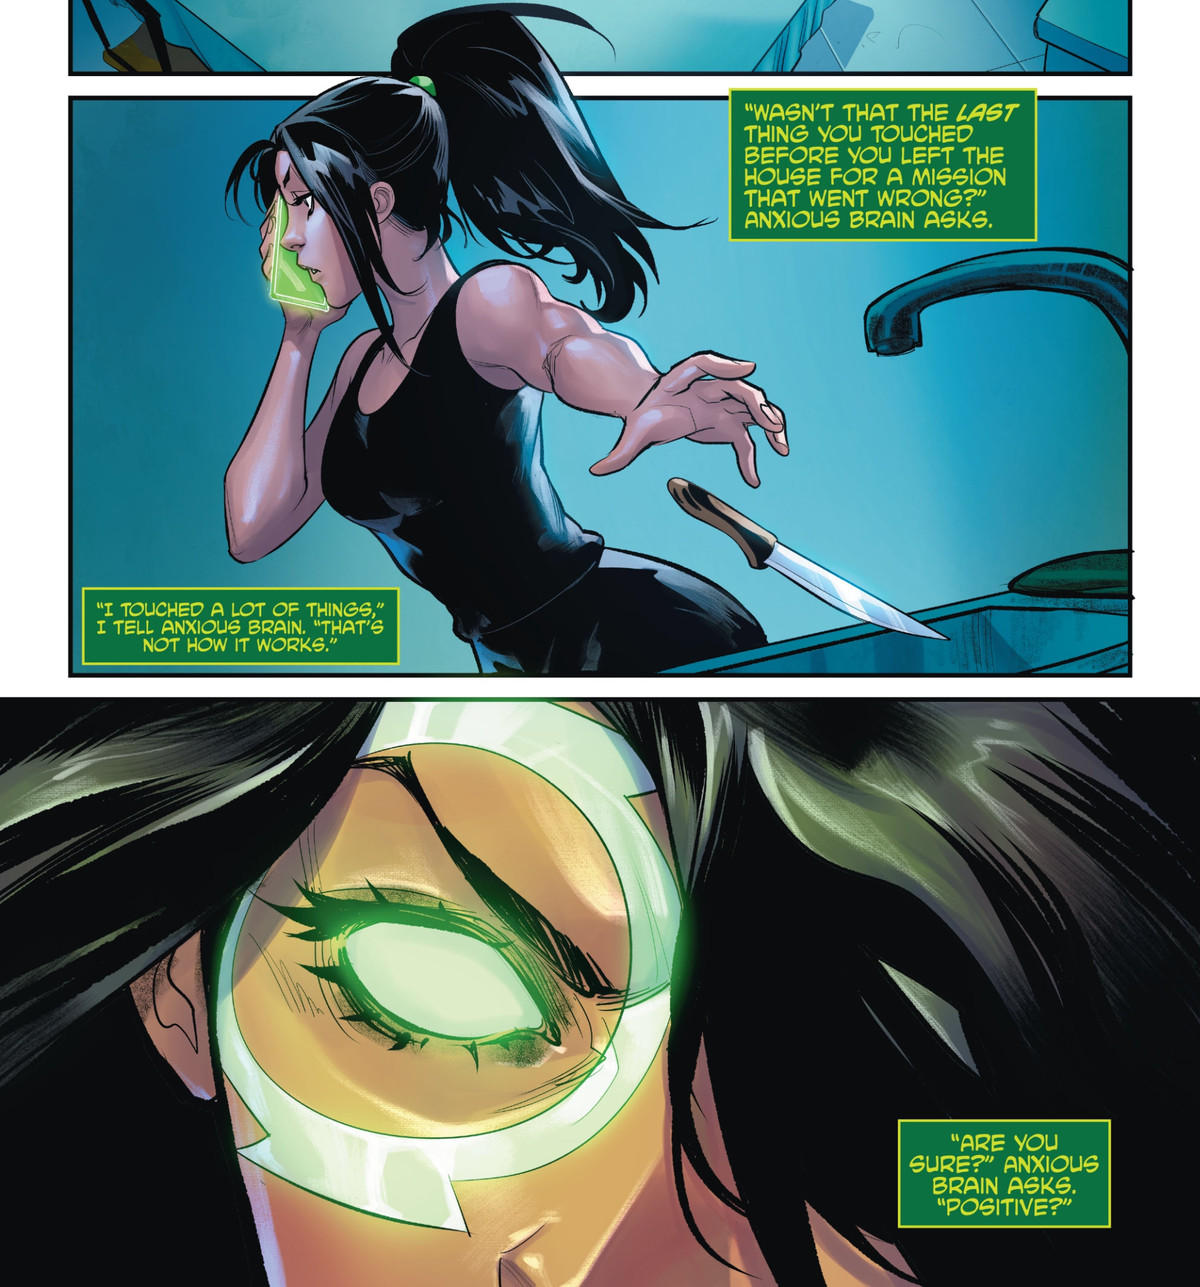 Lanterna Verde Jessica Cruz si mette all'opera nella sua cucina, lanciando un coltello nel lavandino. Nel frattempo, la sua ansia le dice che la missione è fallita perché quel coltello da cucina è stata l'ultima cosa che ha toccato prima di andarsene, in Green Lantern 80th Anniversary 100-Page Super Spectacular, DC Comics (2020). 